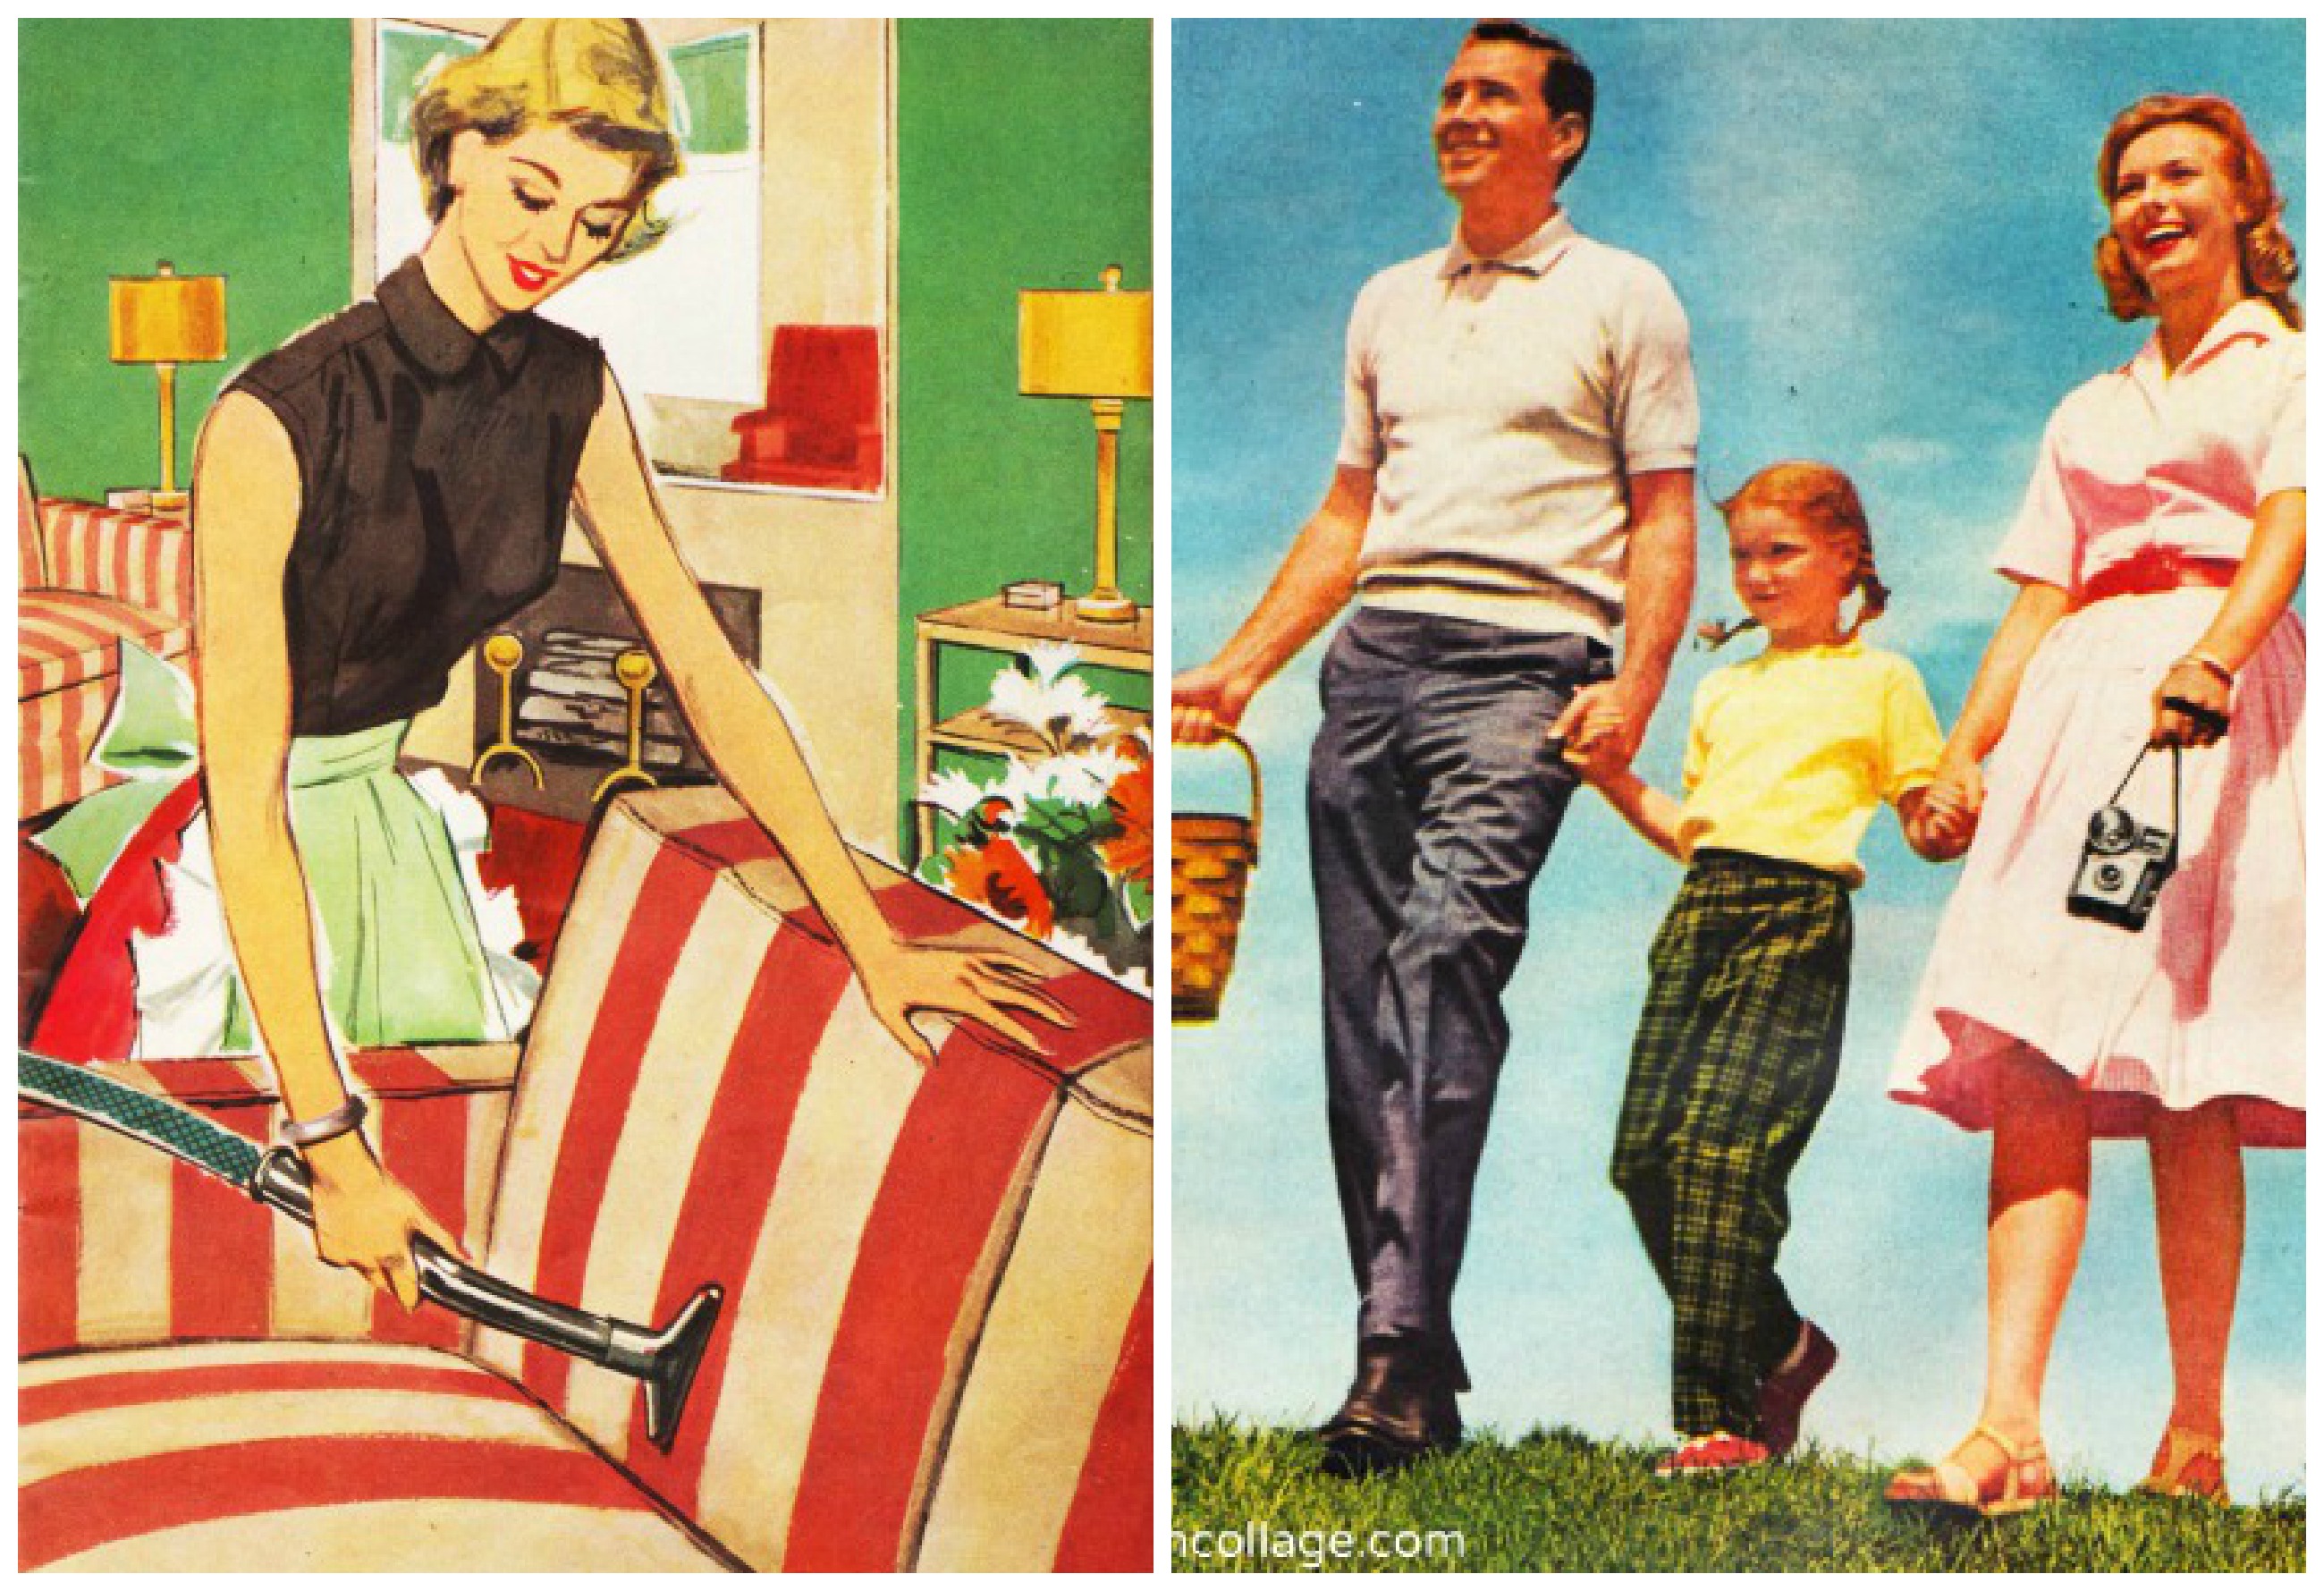 1950s family values